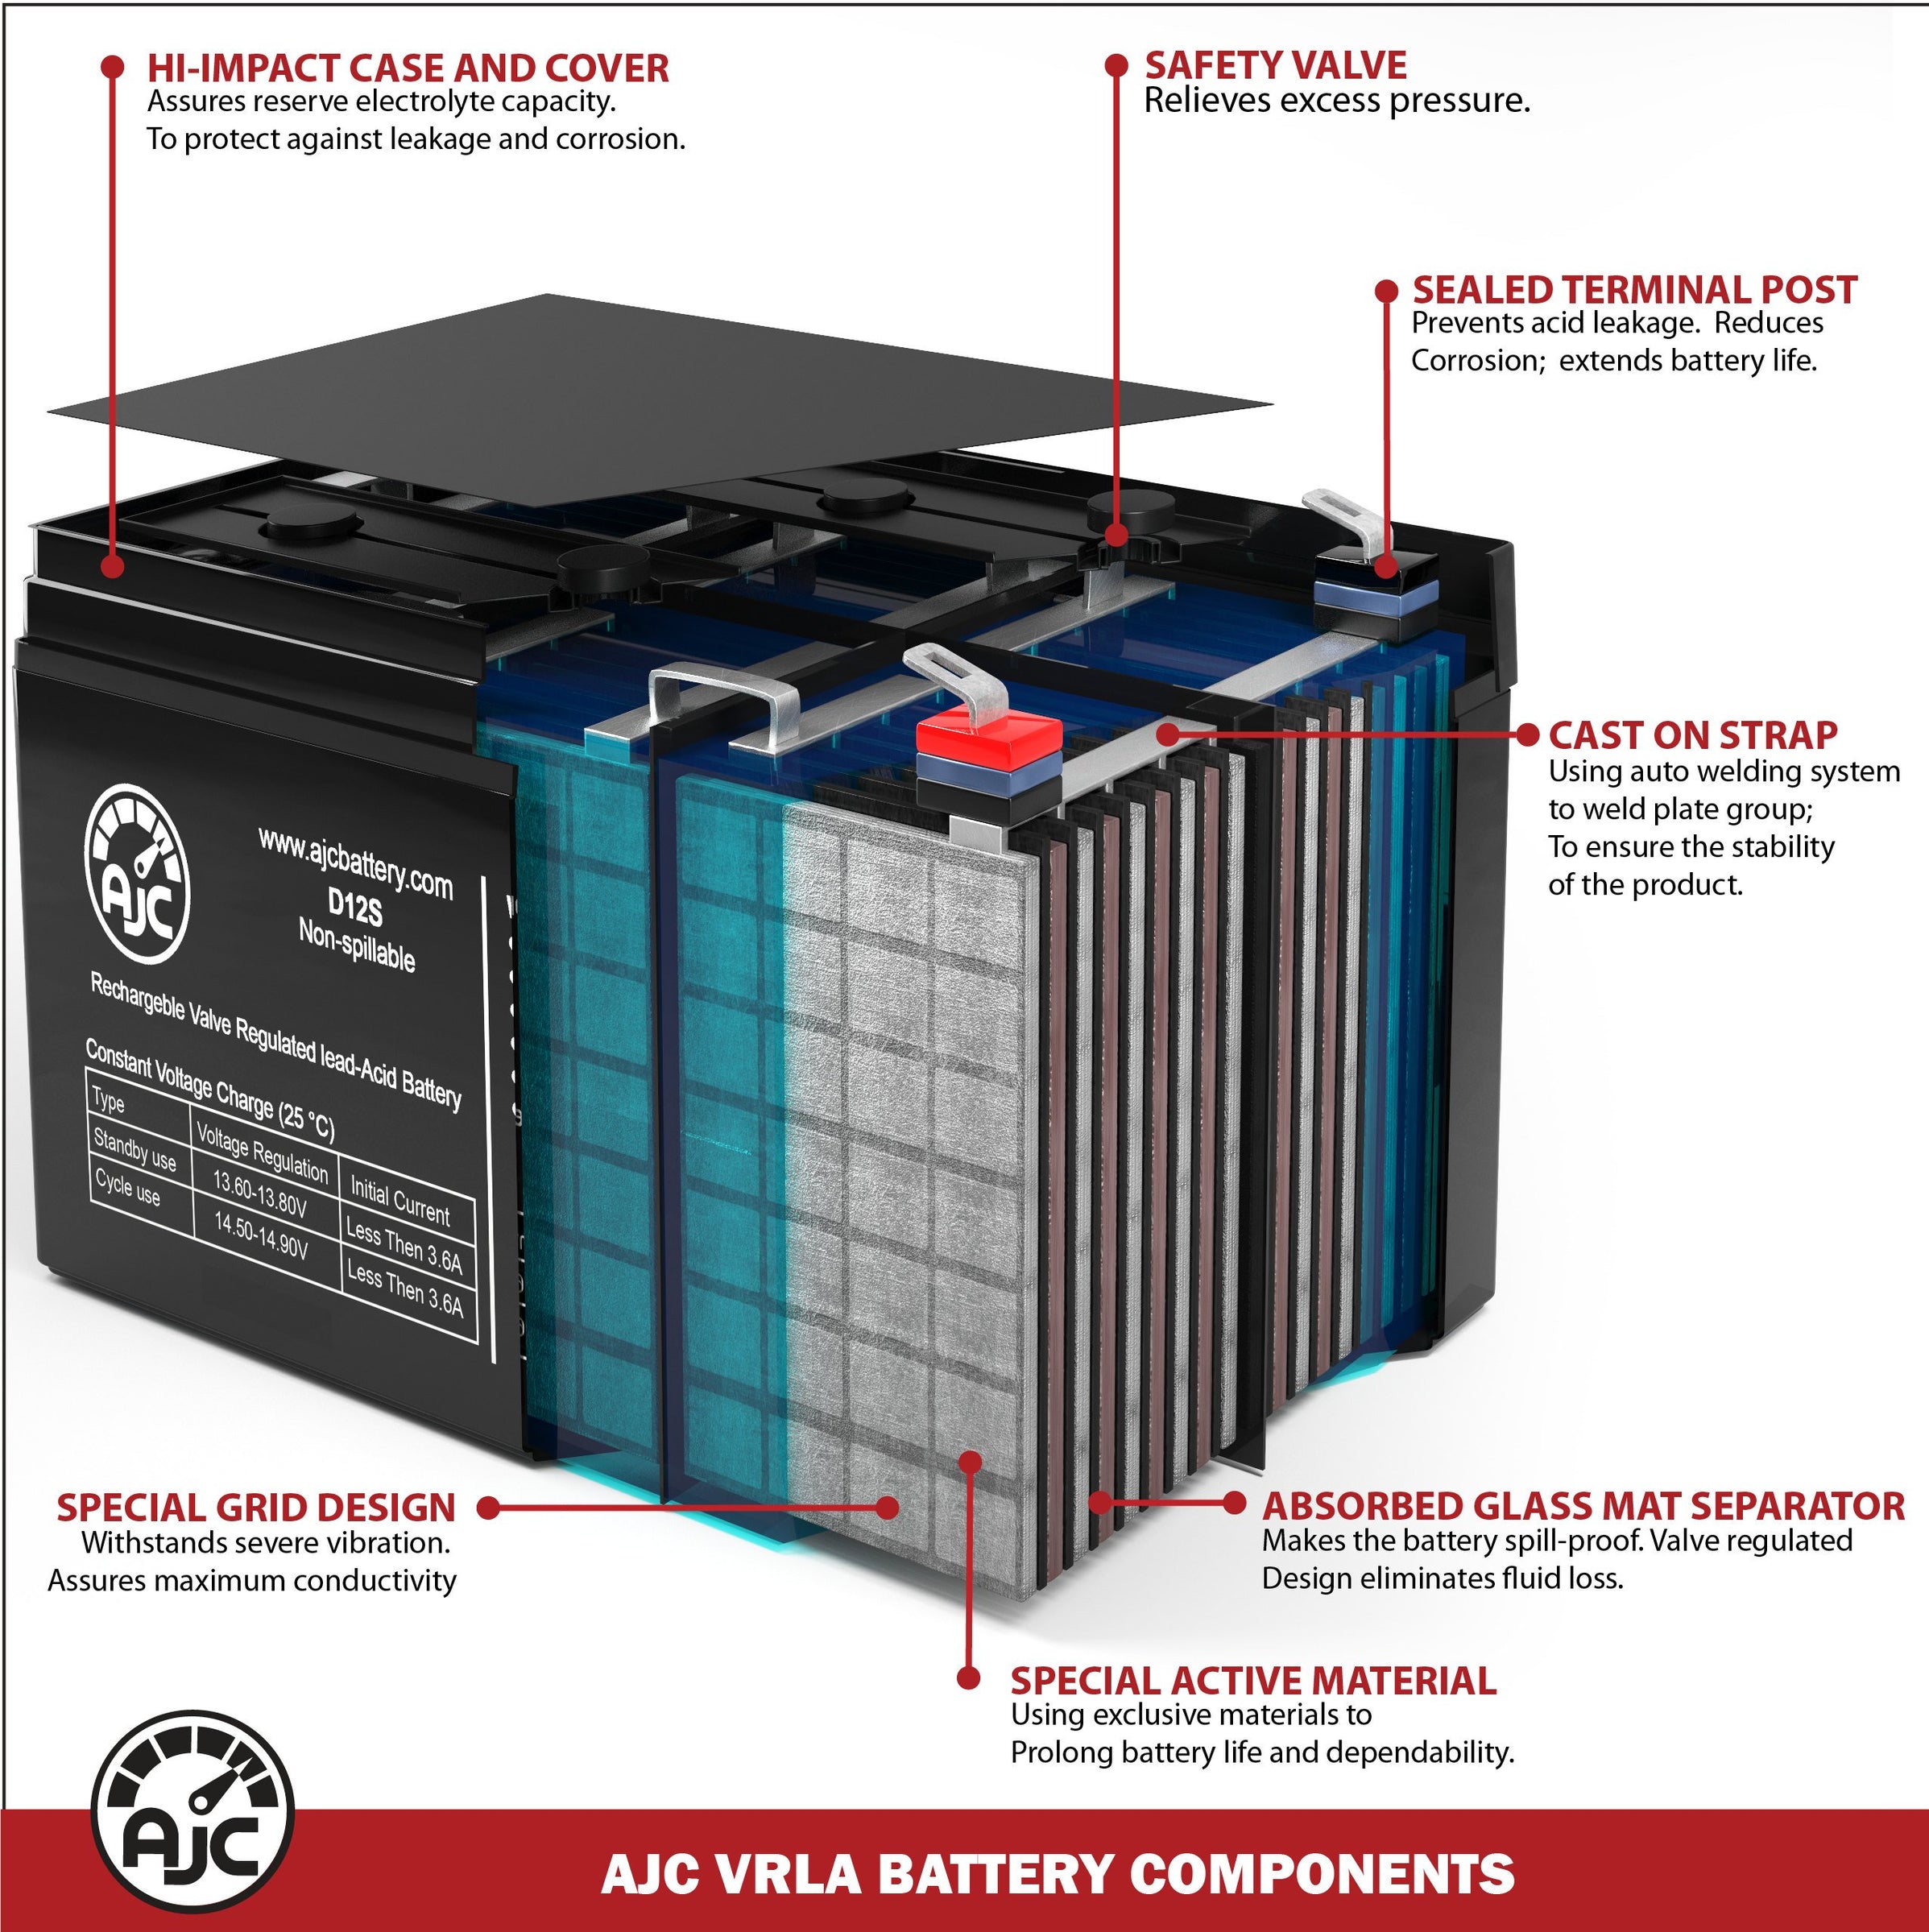 Alpha Technologies Nexsys 900E 017126XX 12V 7Ah UPS Replacement Battery BatteryClerkcom UPS